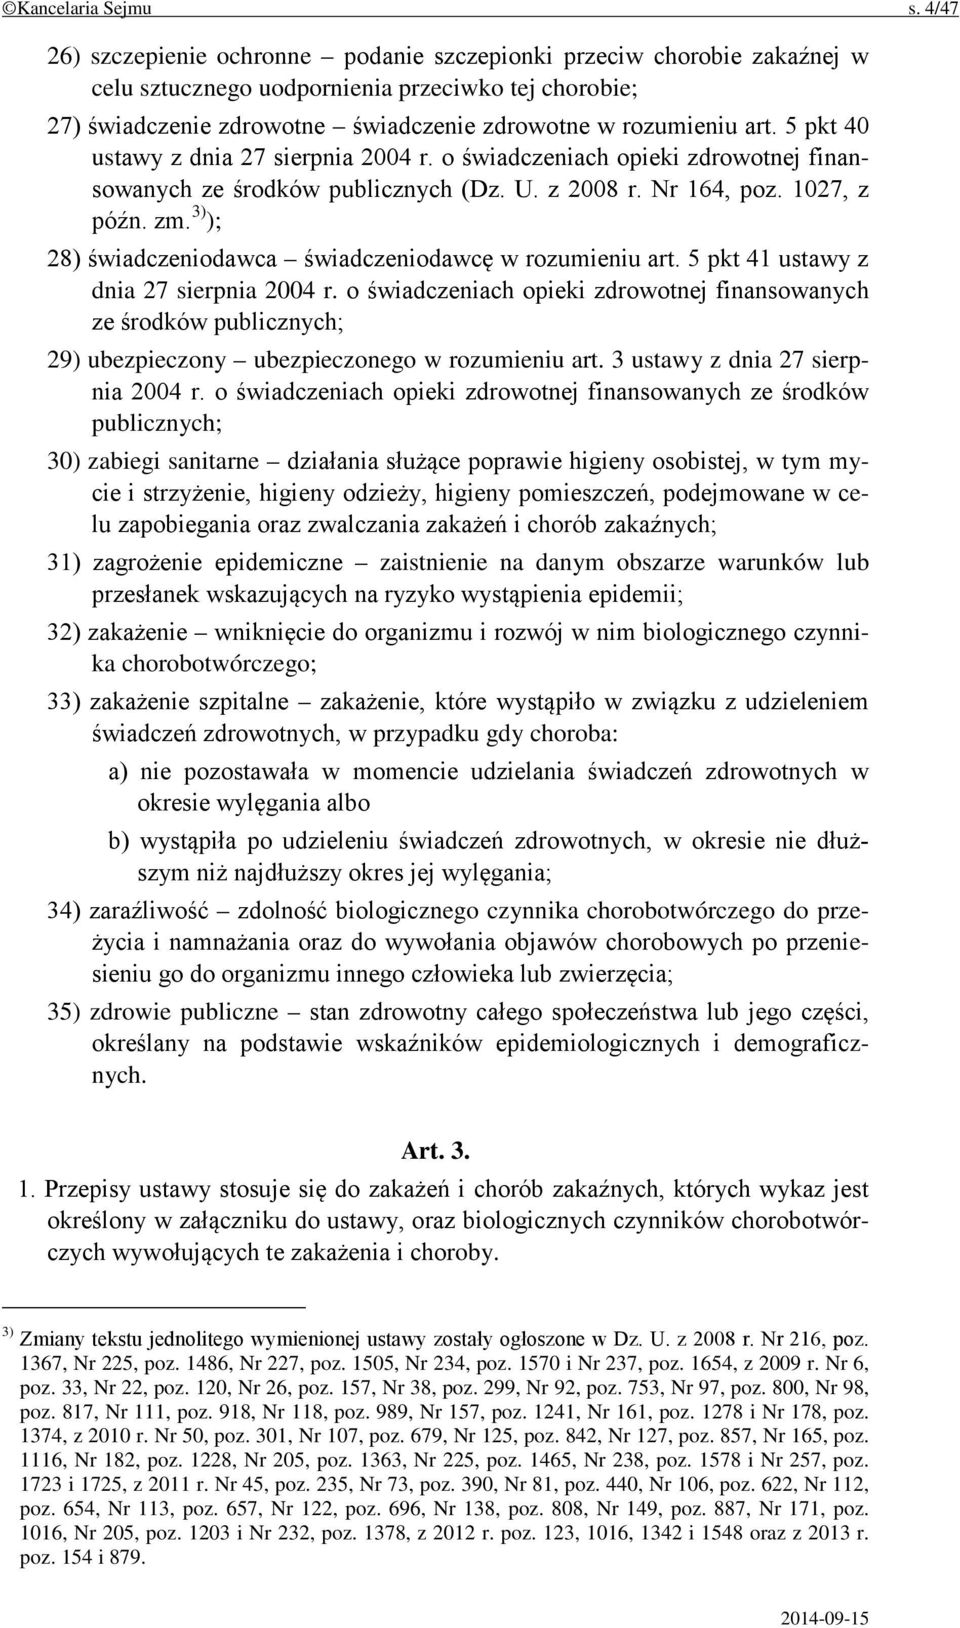 5 pkt 40 ustawy z dnia 27 sierpnia 2004 r. o świadczeniach opieki zdrowotnej finansowanych ze środków publicznych (Dz. U. z 2008 r. Nr 164, poz. 1027, z późn. zm.